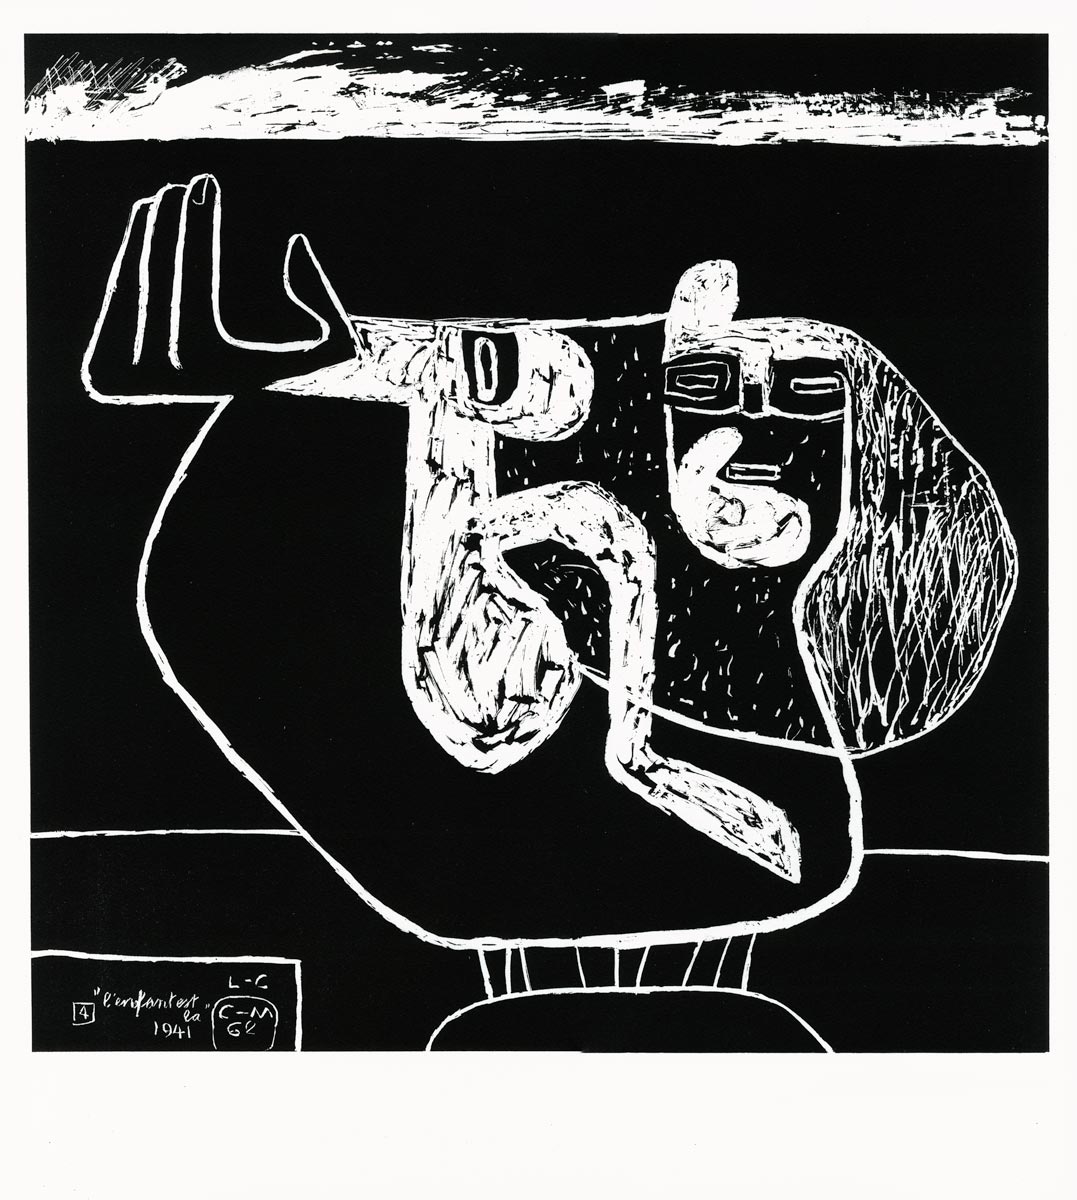  Le Corbusier, Lithographie, -La mer est toujours présente (4)-, 1962